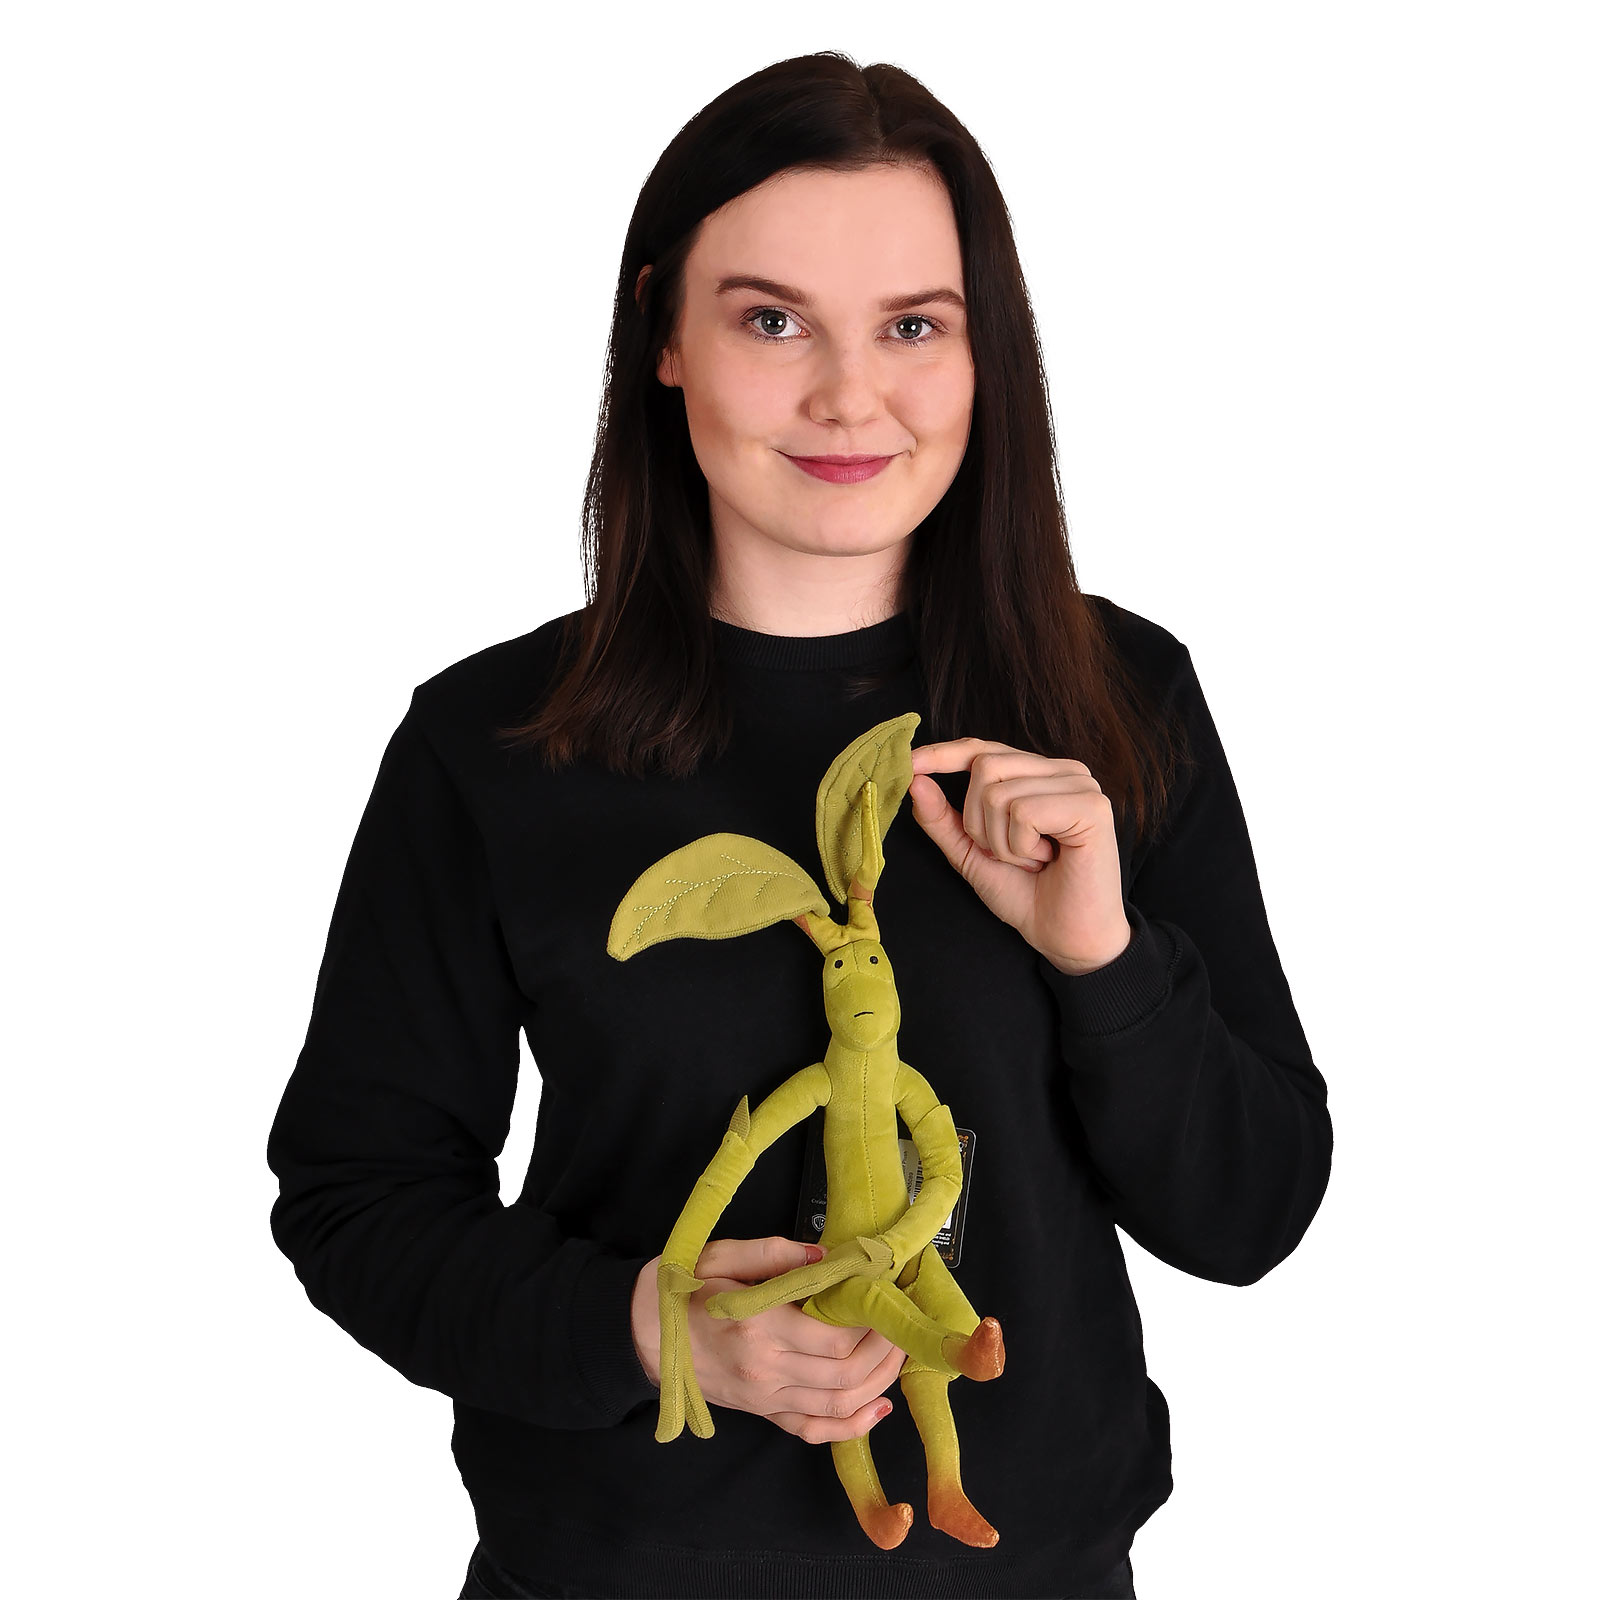 Phantastische Tierwesen - Bowtruckle Plüsch Figur 35 cm